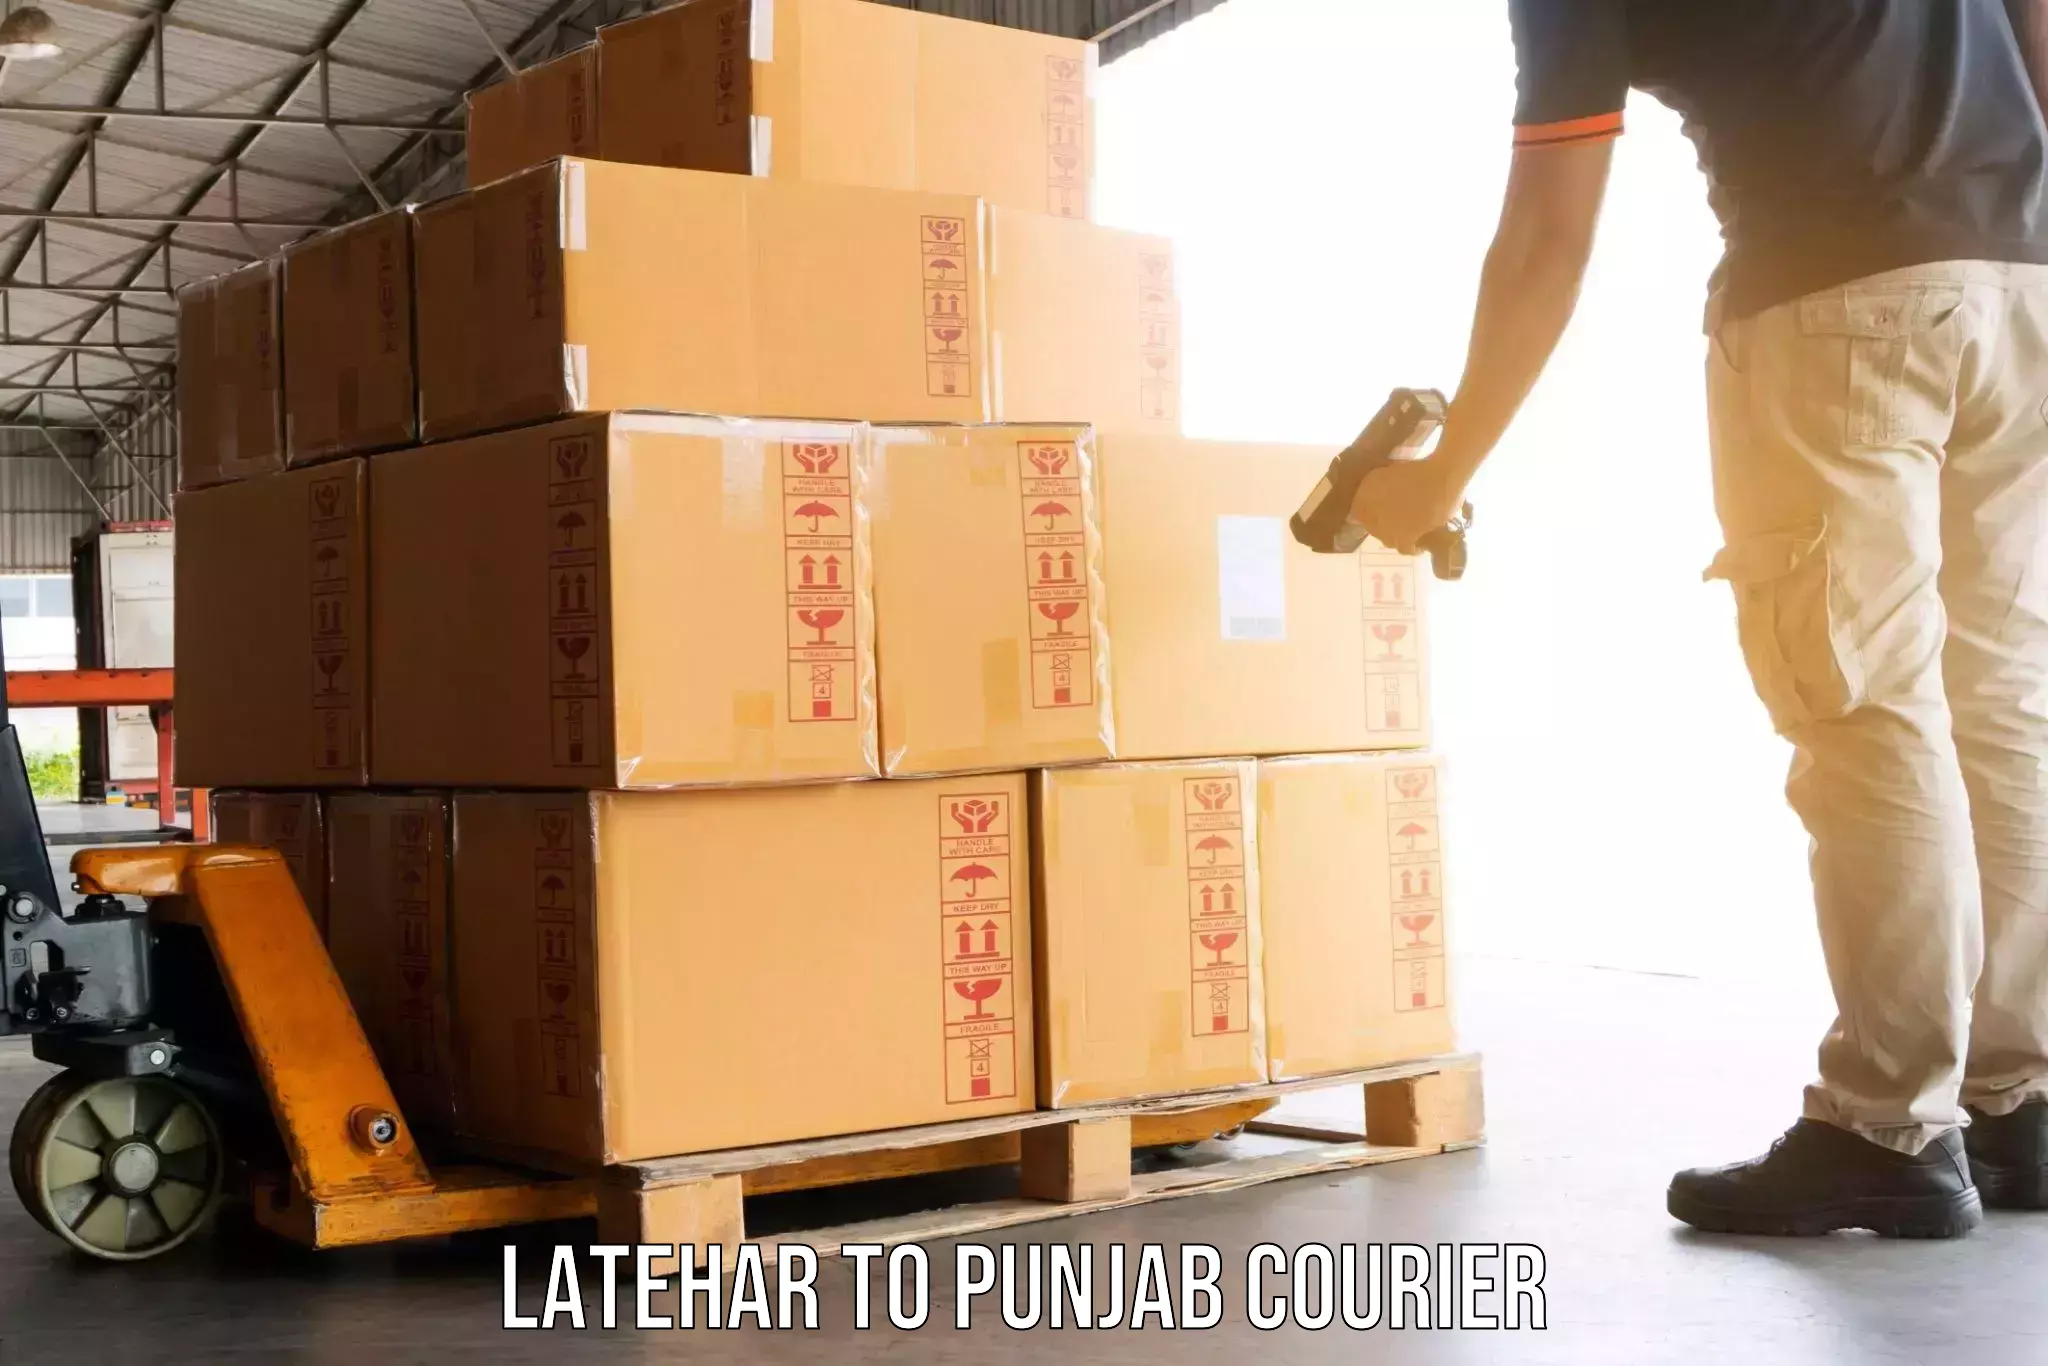 Furniture transport professionals Latehar to Jalandhar